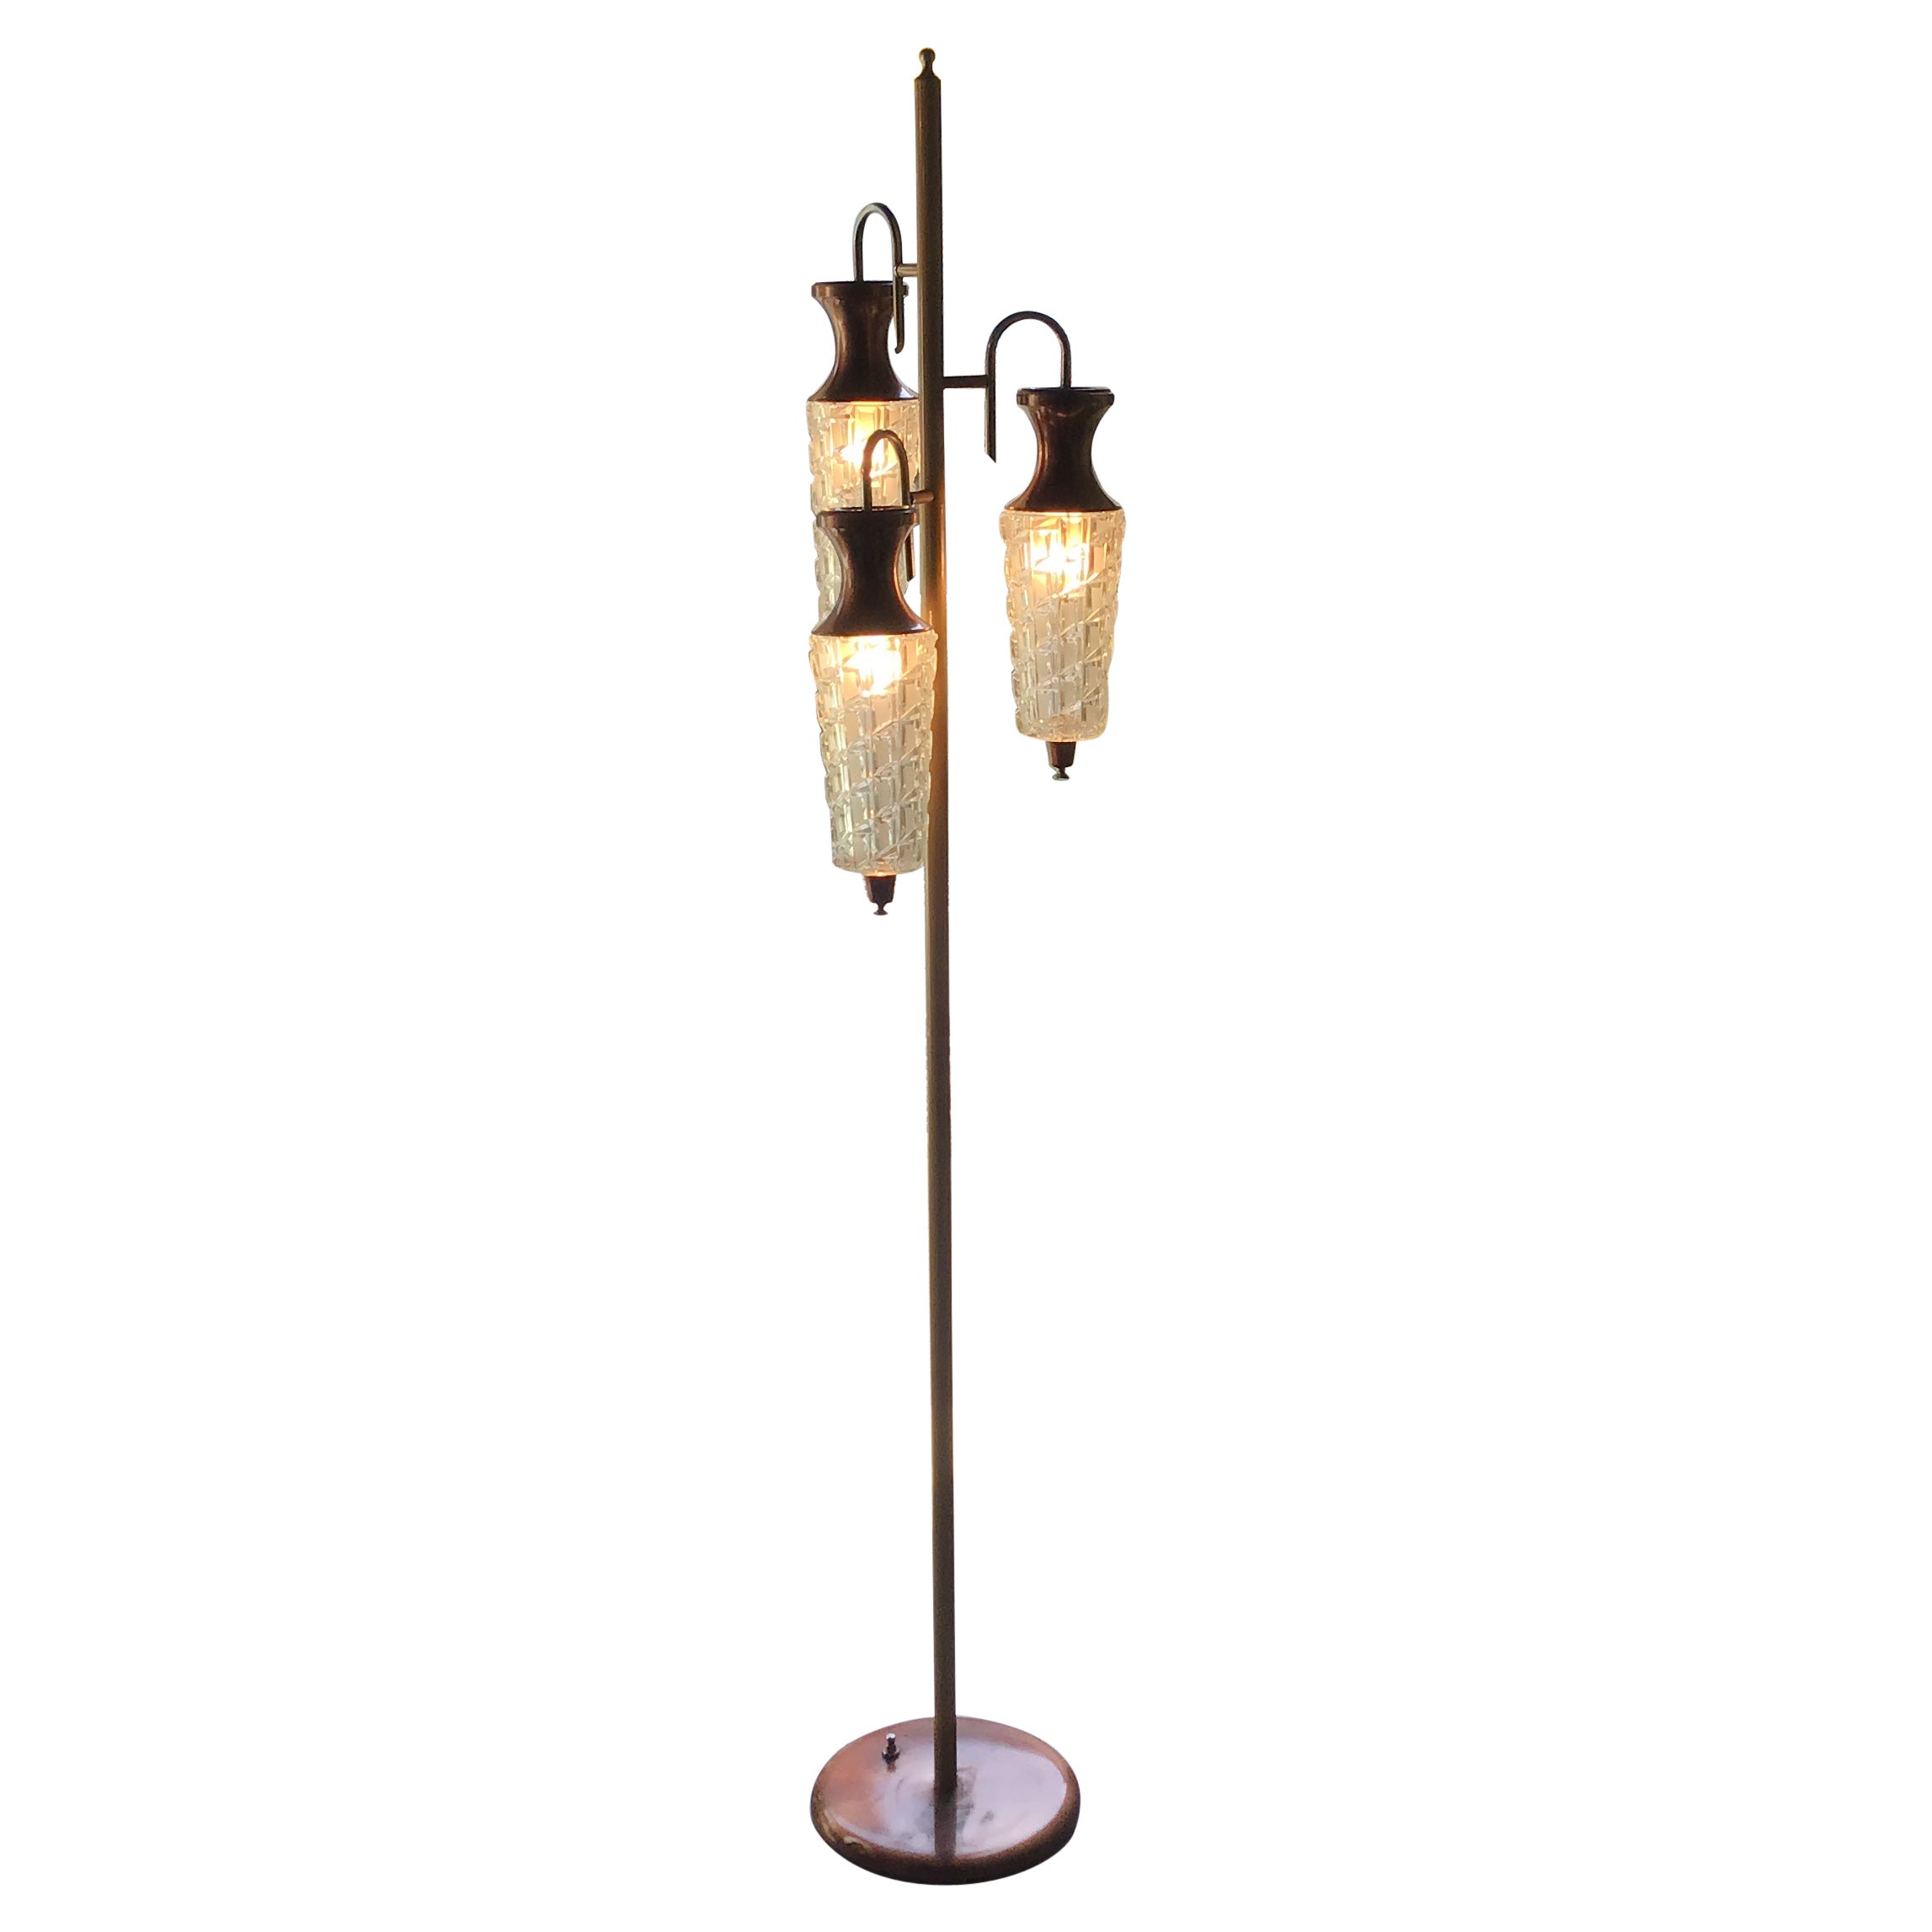 Sciolari Floor Lamp Metal Crome Glass Metal 1955 Italy For Sale